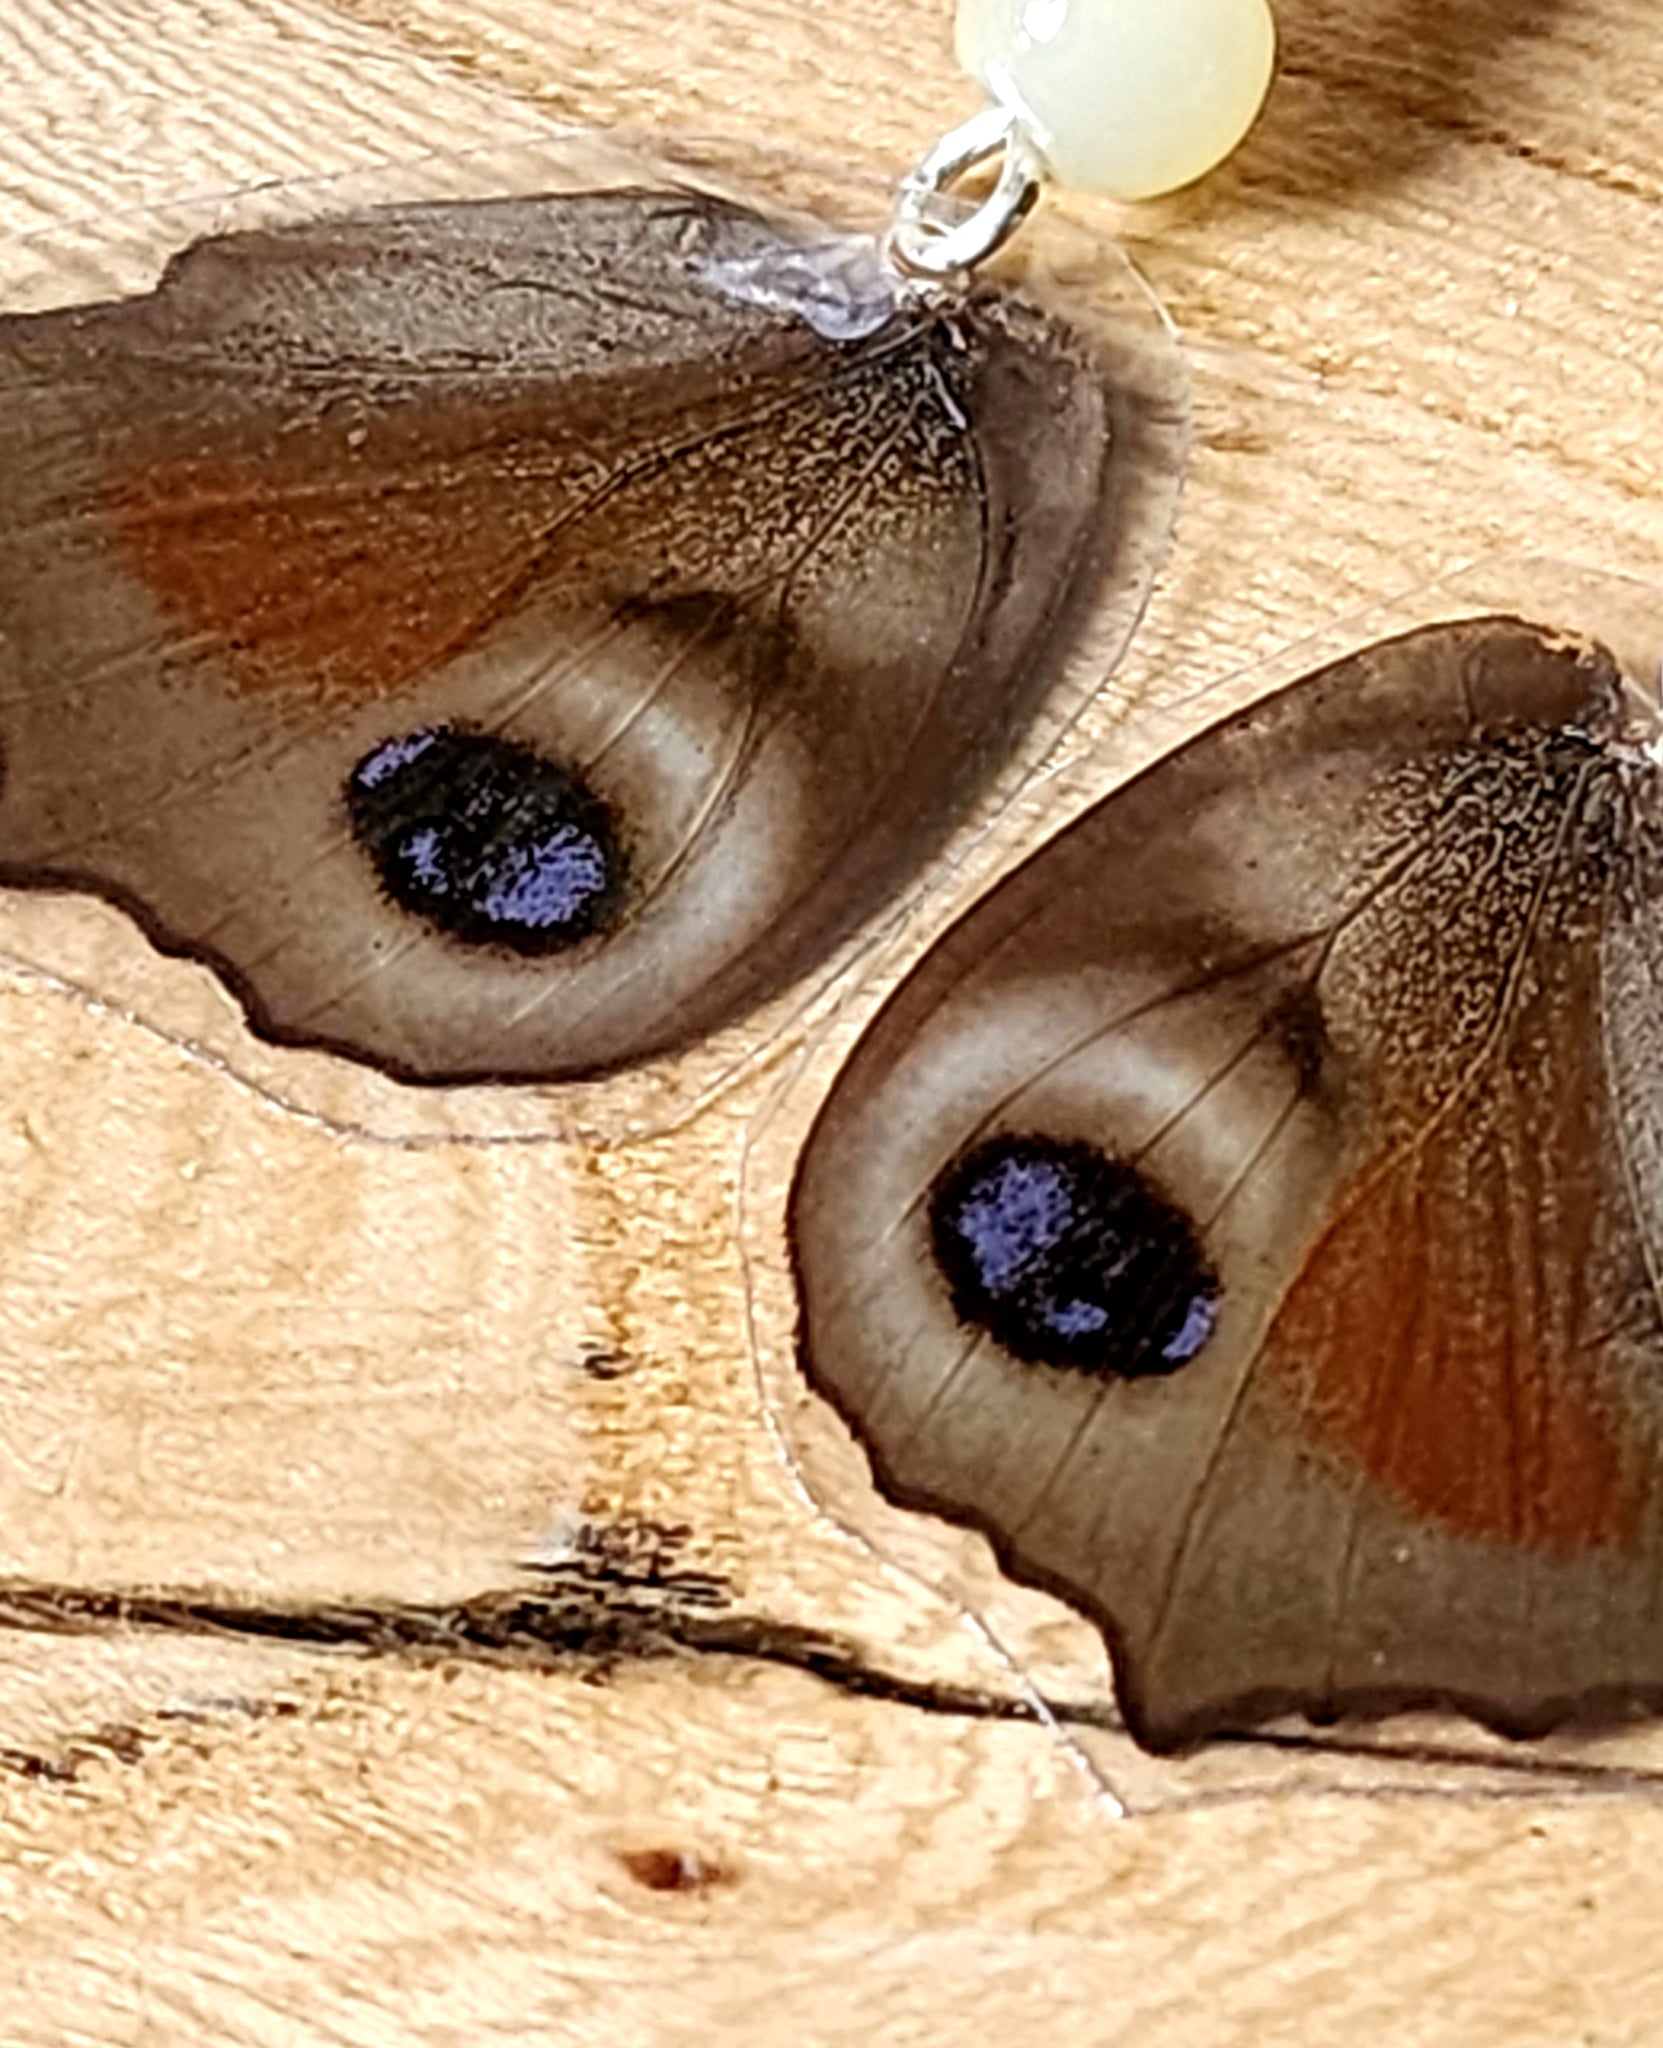 European Peacock Butterfly Wing Earrings, IO Butterfly Earrings